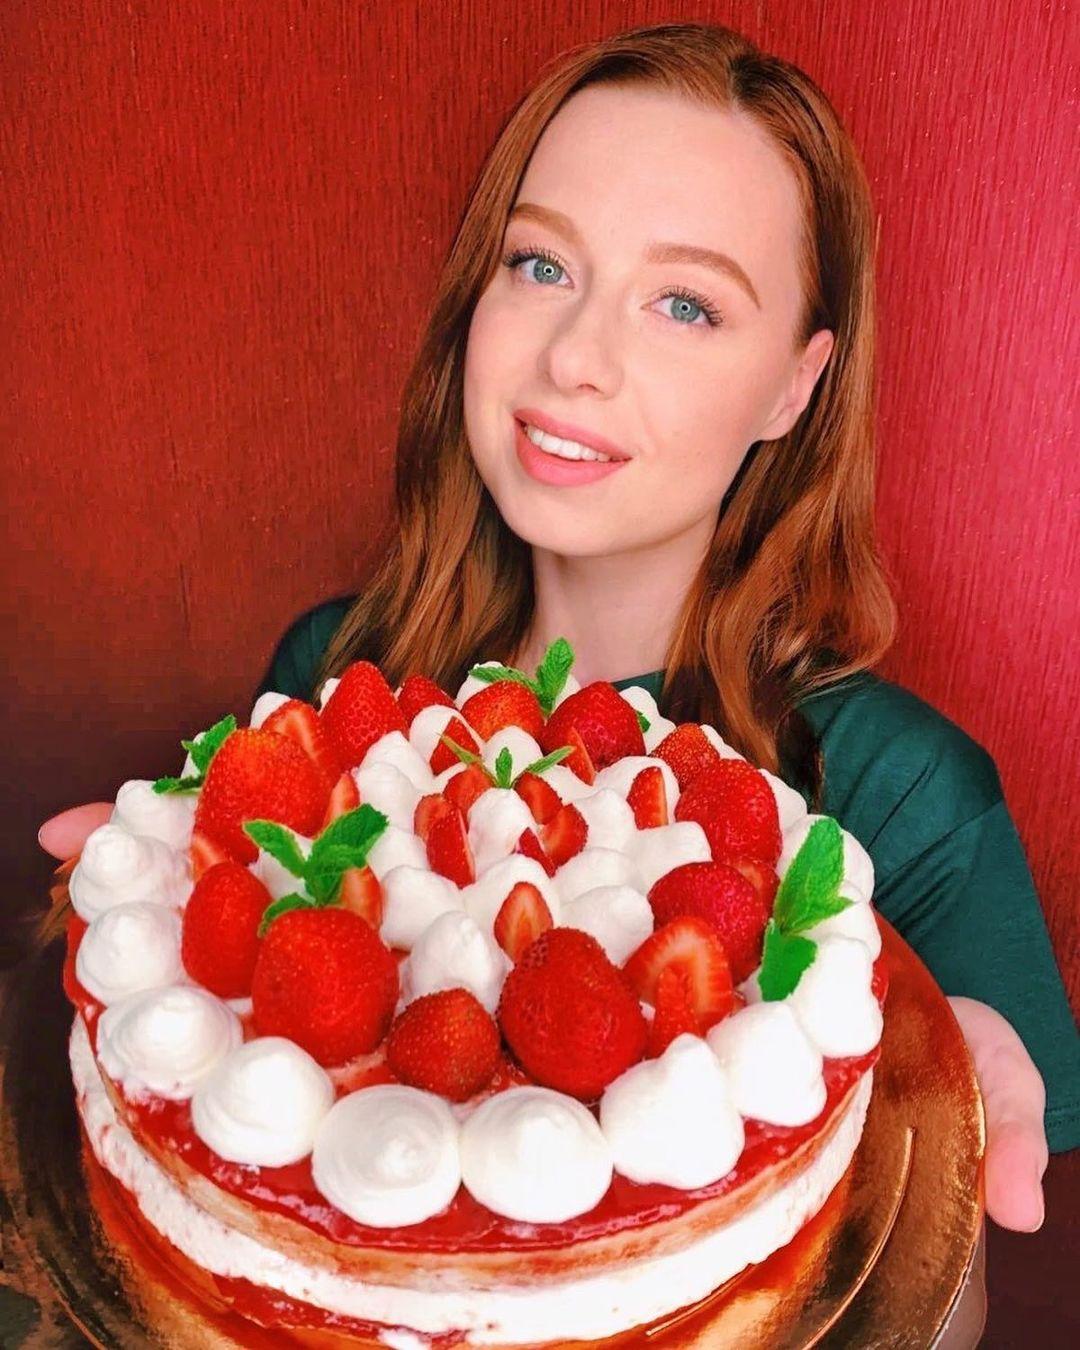 По клубничке! Юлия Савичева испекла шикарный торт в подарок Екатерине Рождественской